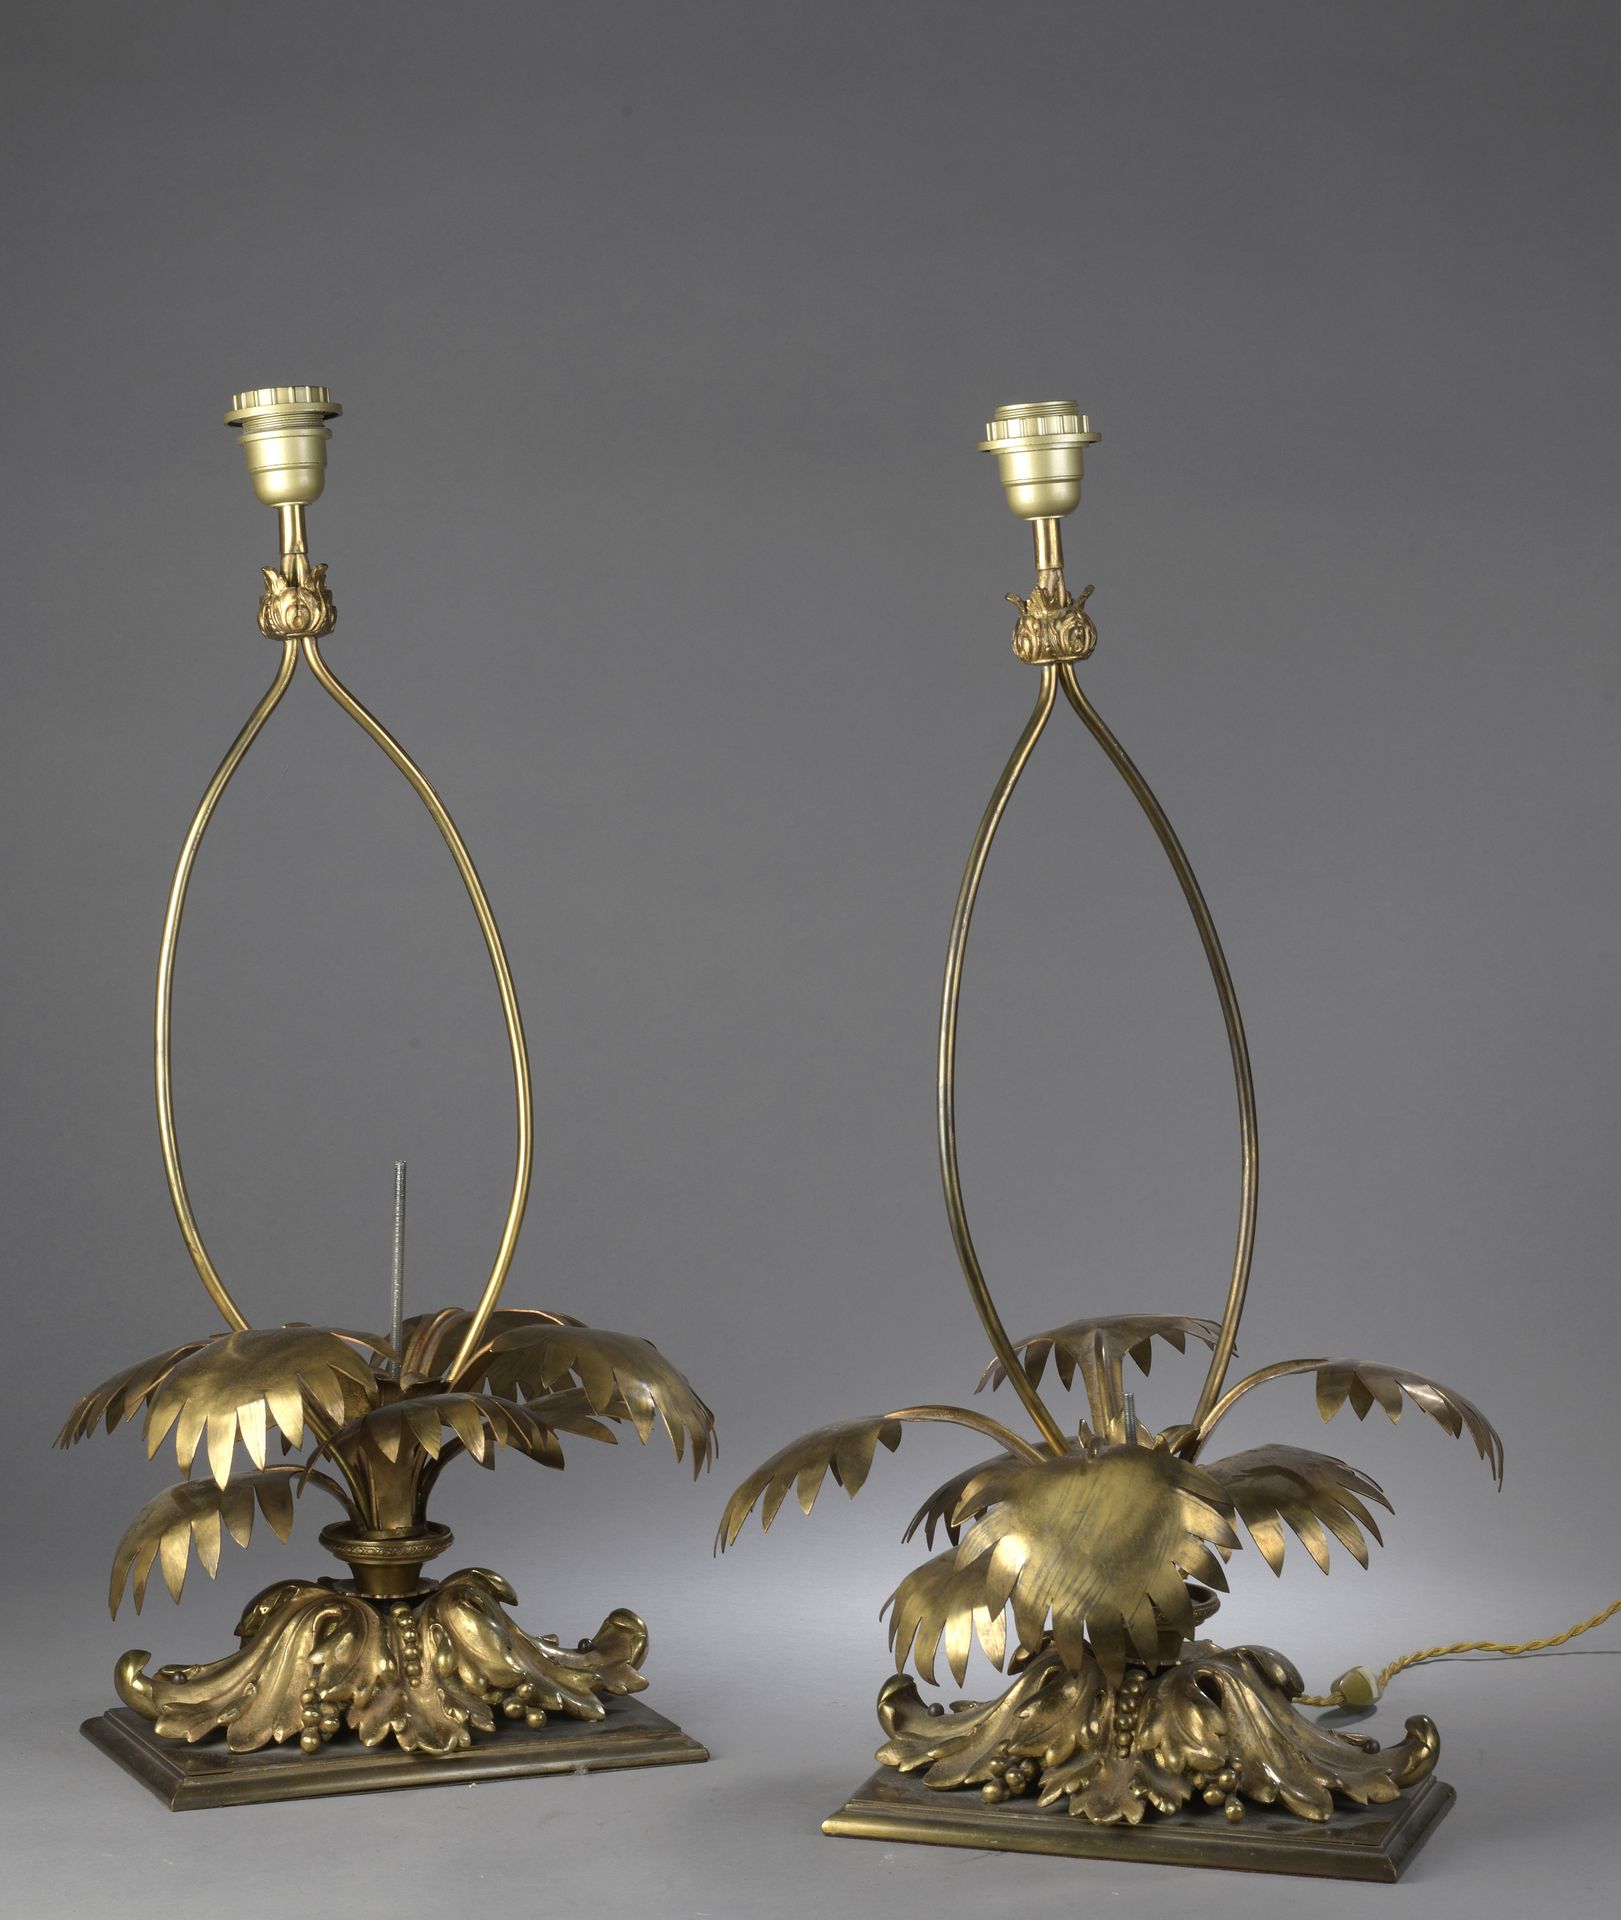 Null 一对查尔斯家族风格的灯具，镀金切割金属，中间部分有叶子。

事故

H.60厘米